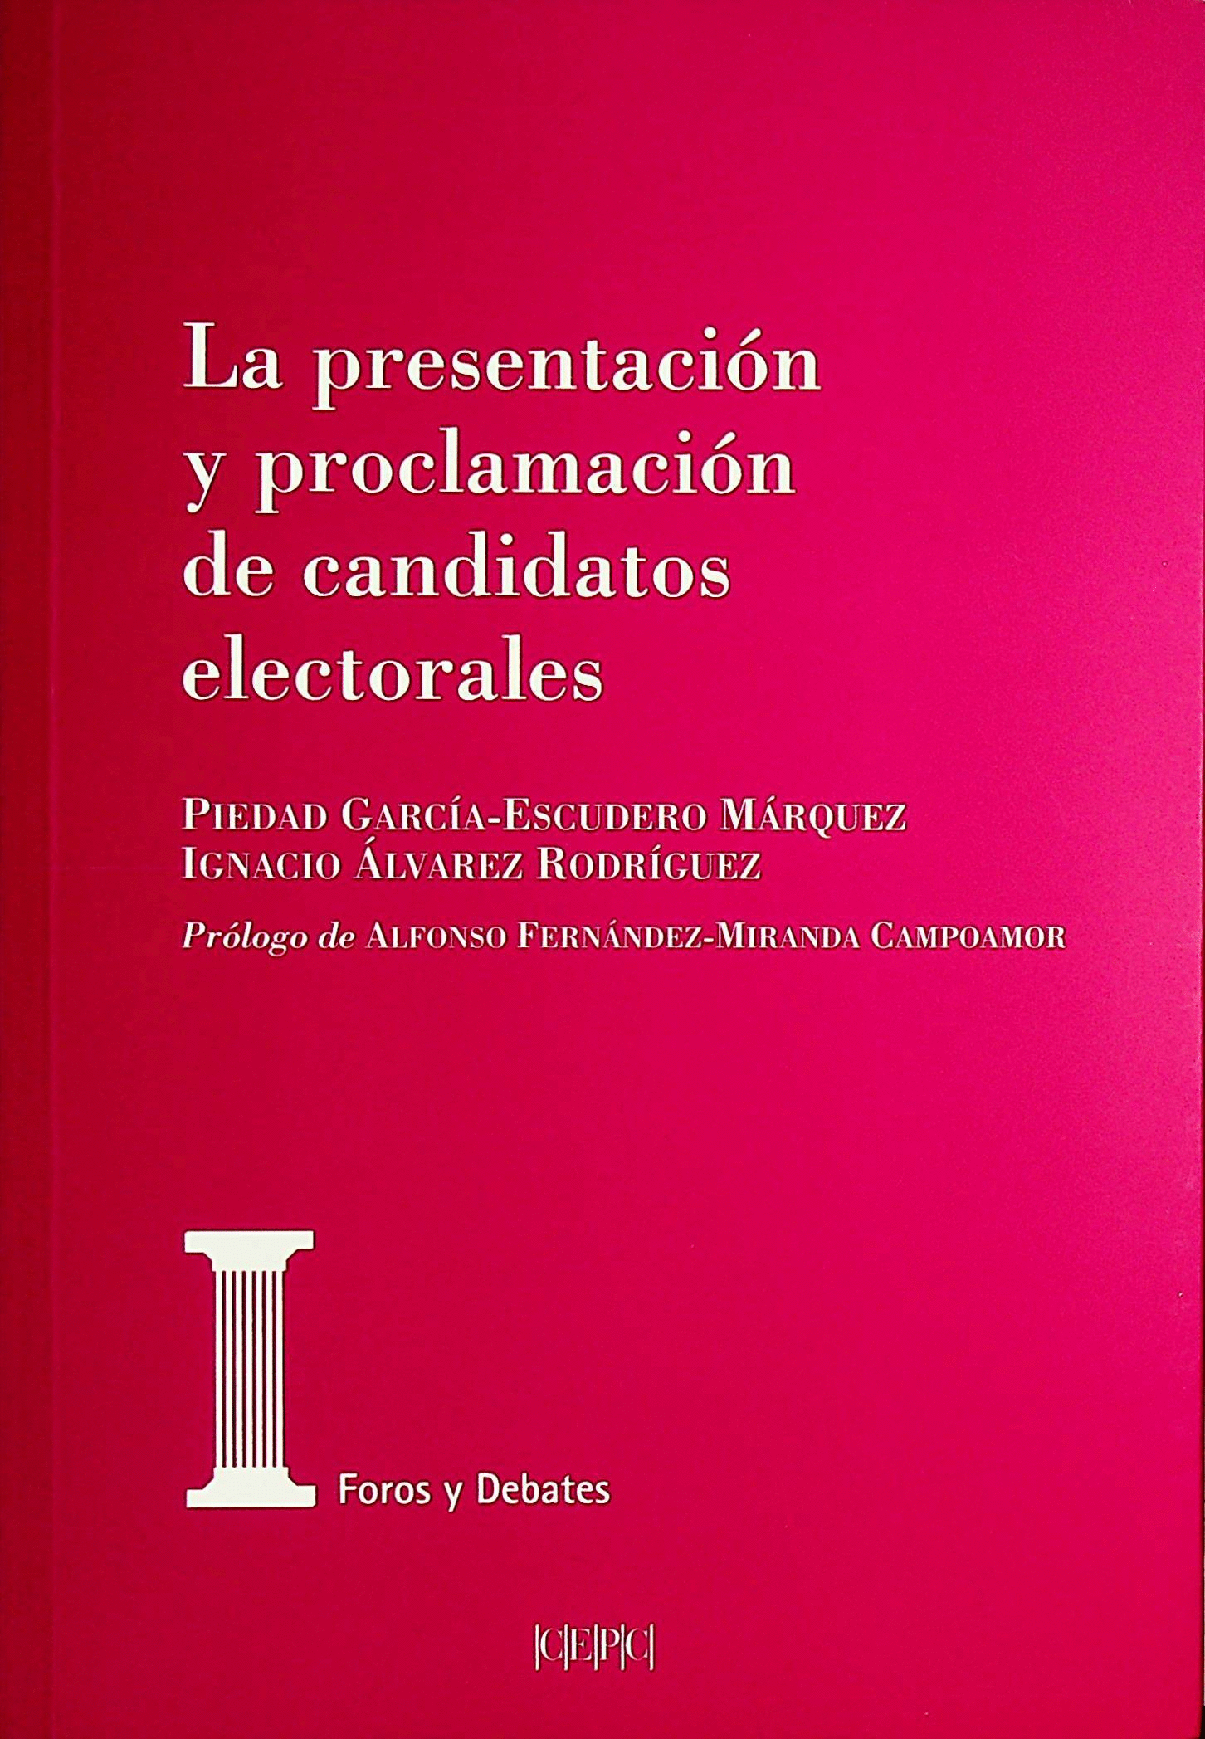 Imagen de portada del libro La presentación y proclamación de los candidatos electorales